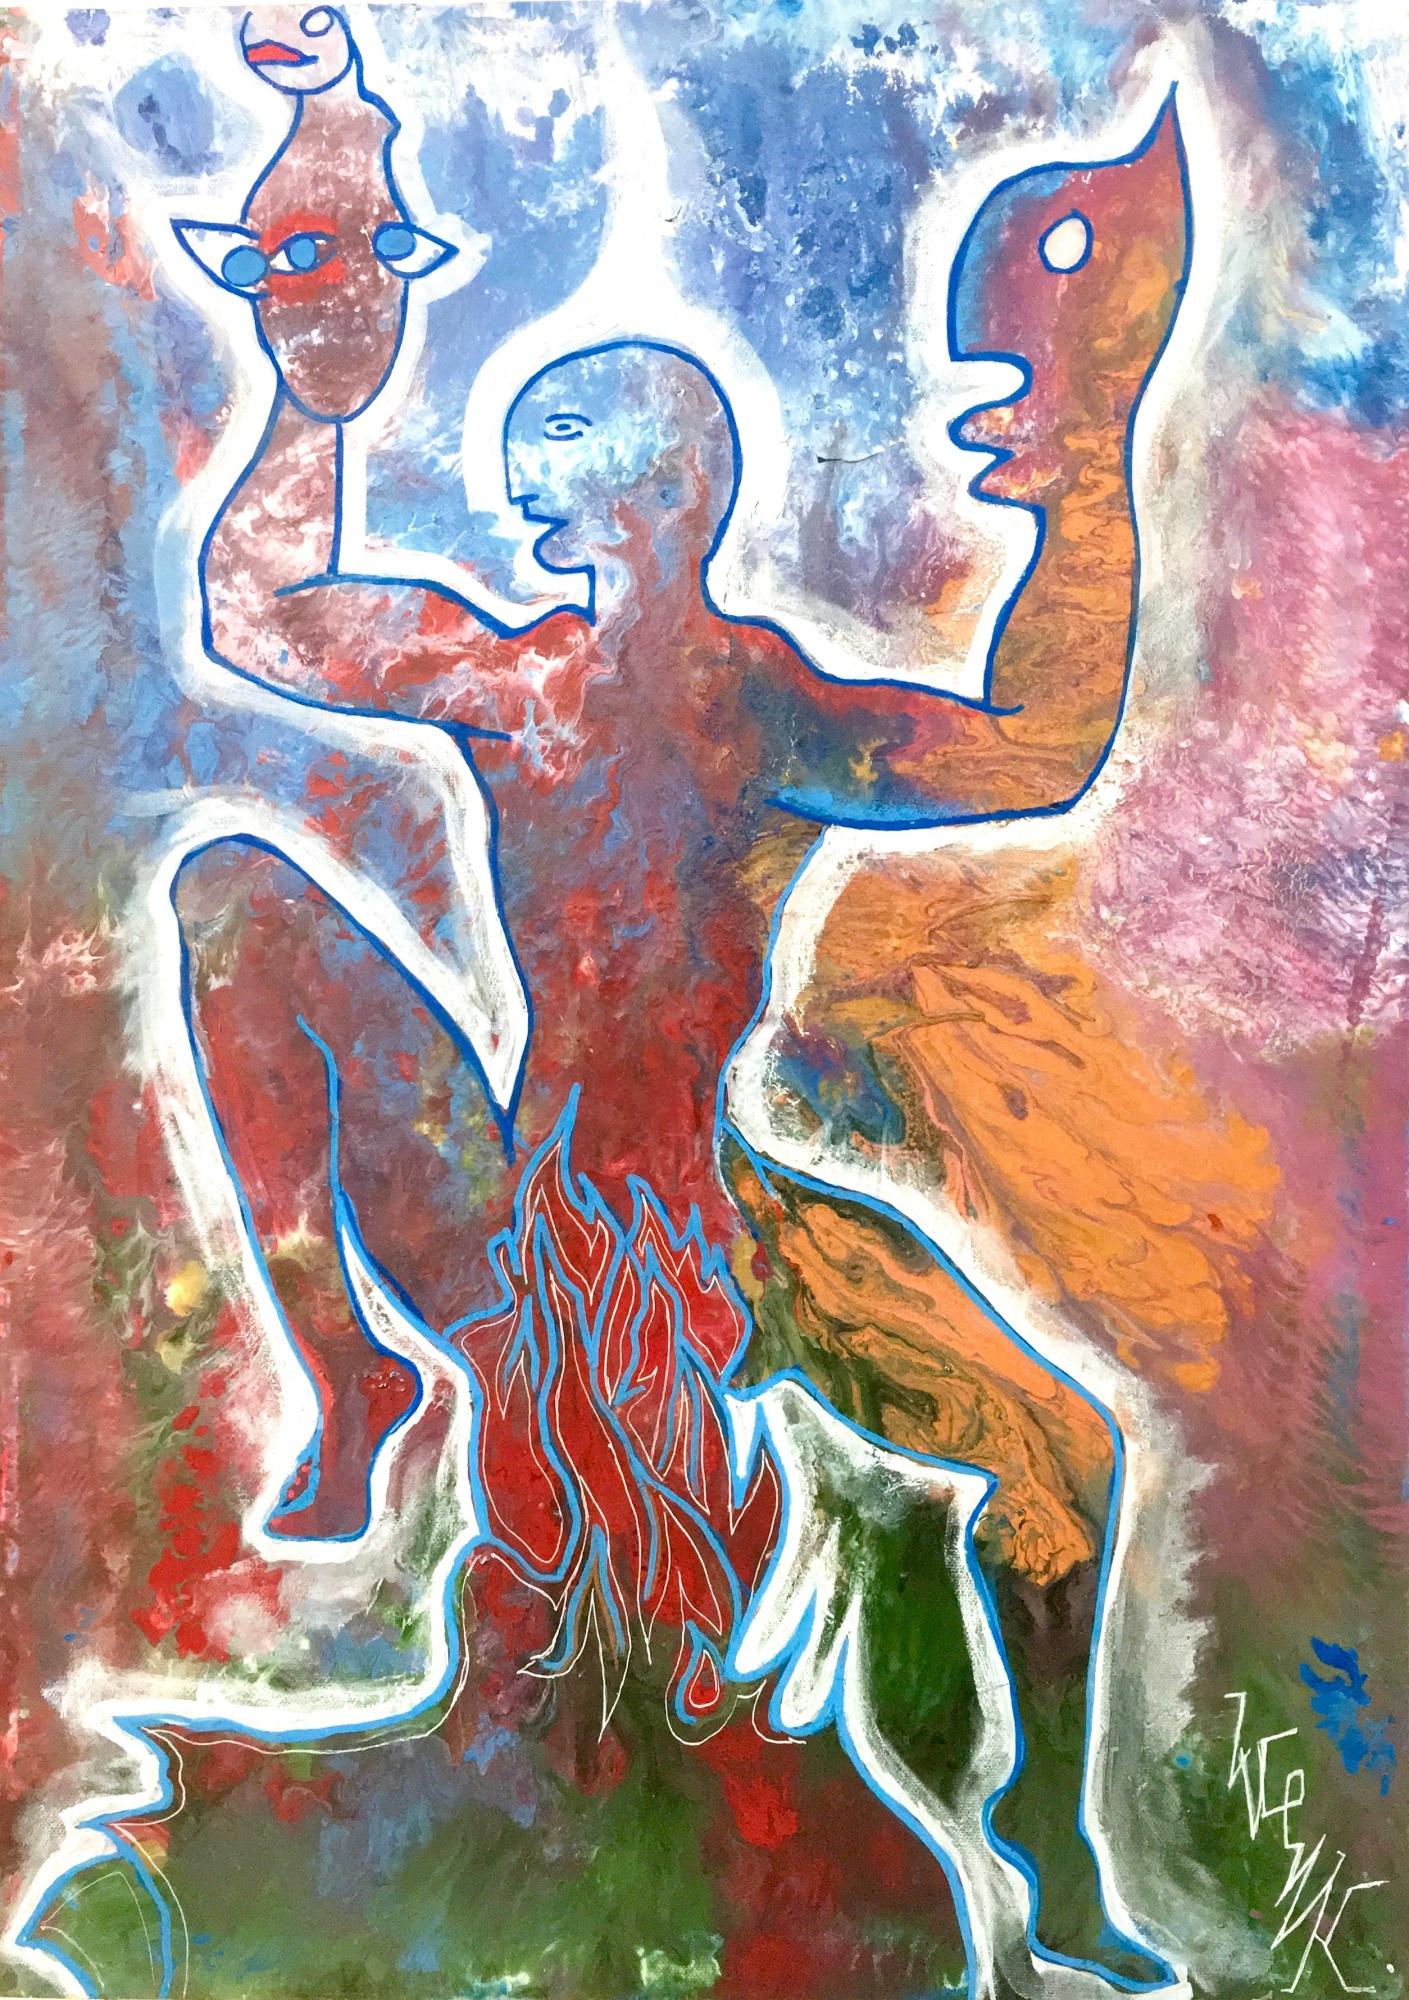 Übersetzter Titel: "Tanzende Figur".

Acrylfarbe und Emaille auf Leinwand. 


Der Künstler verkauft das handgefertigte, originale und einmalige Werk, behält sich aber das Recht vor, es in Form von Multiples oder Digitaldrucken zu vervielfältigen, je